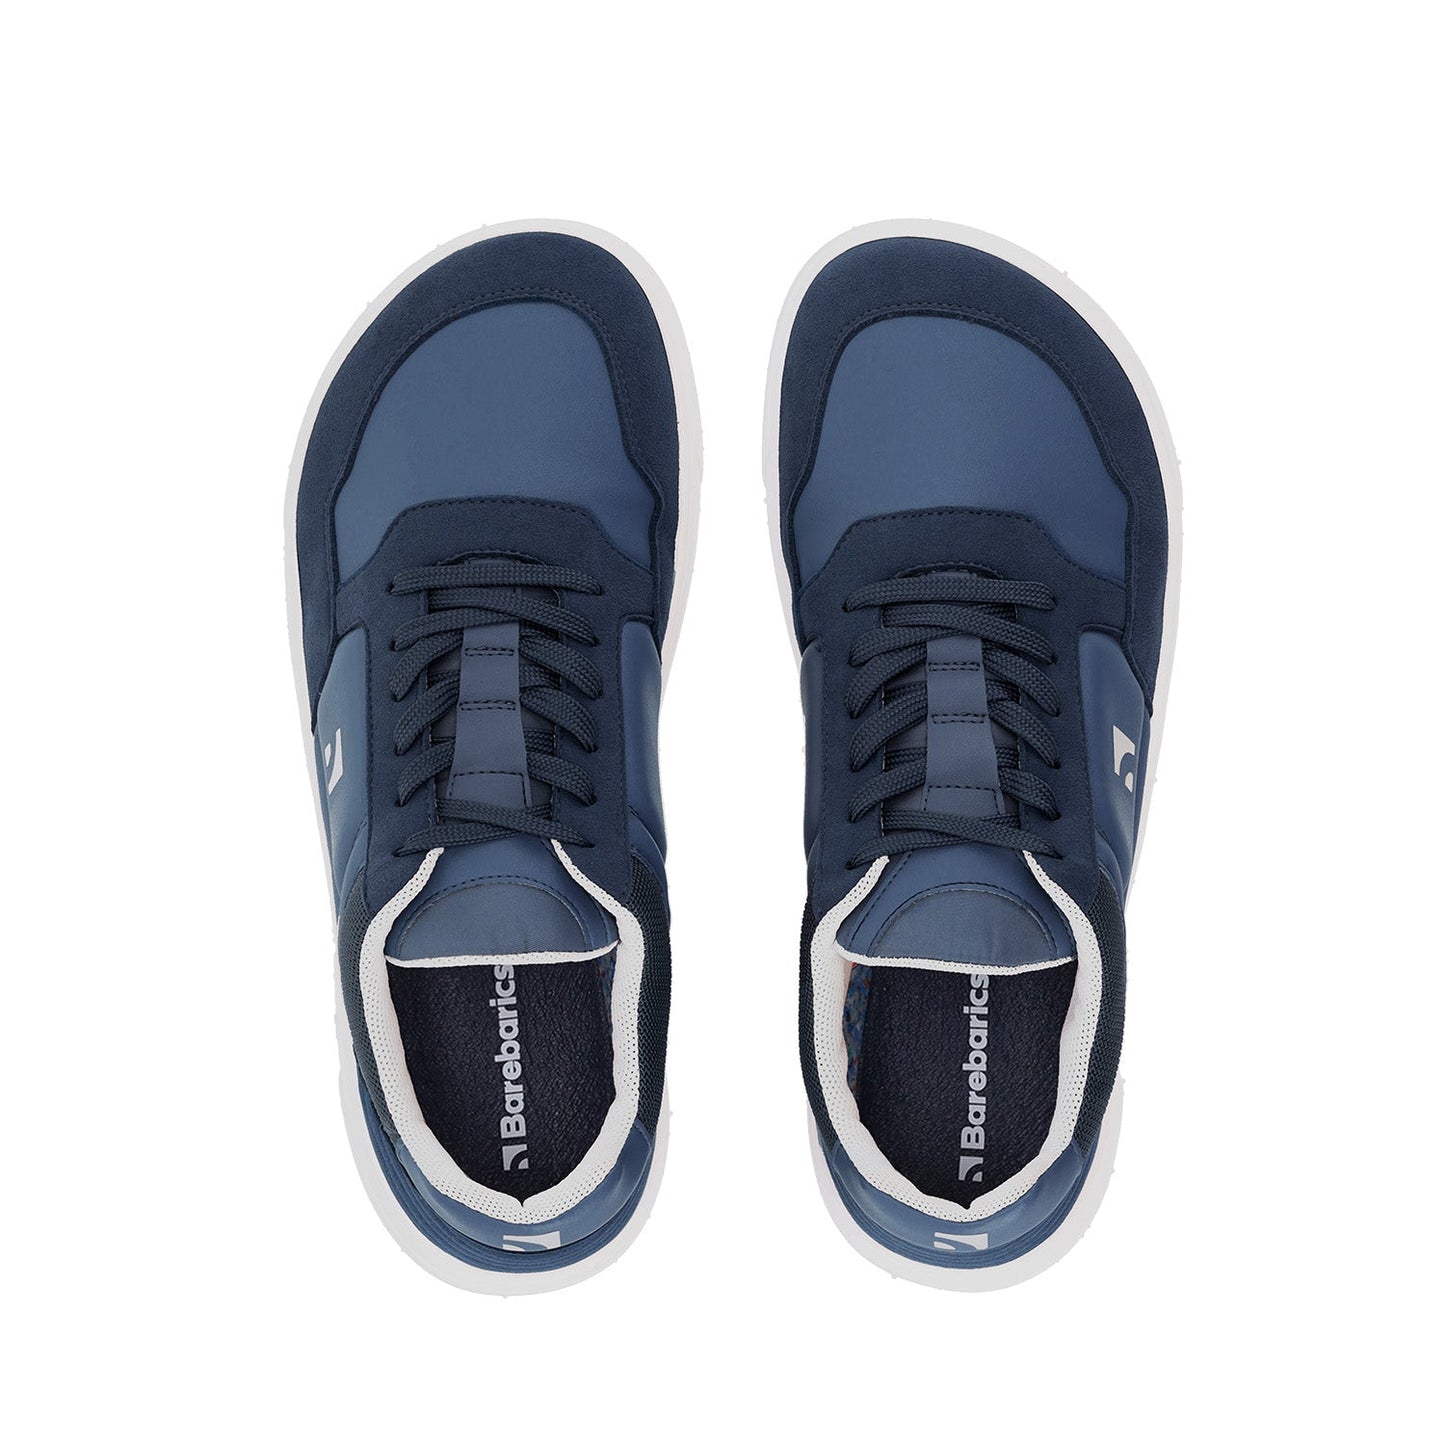 Barefoot Sneakers Barebarics - Axiom - Dark Blue & White